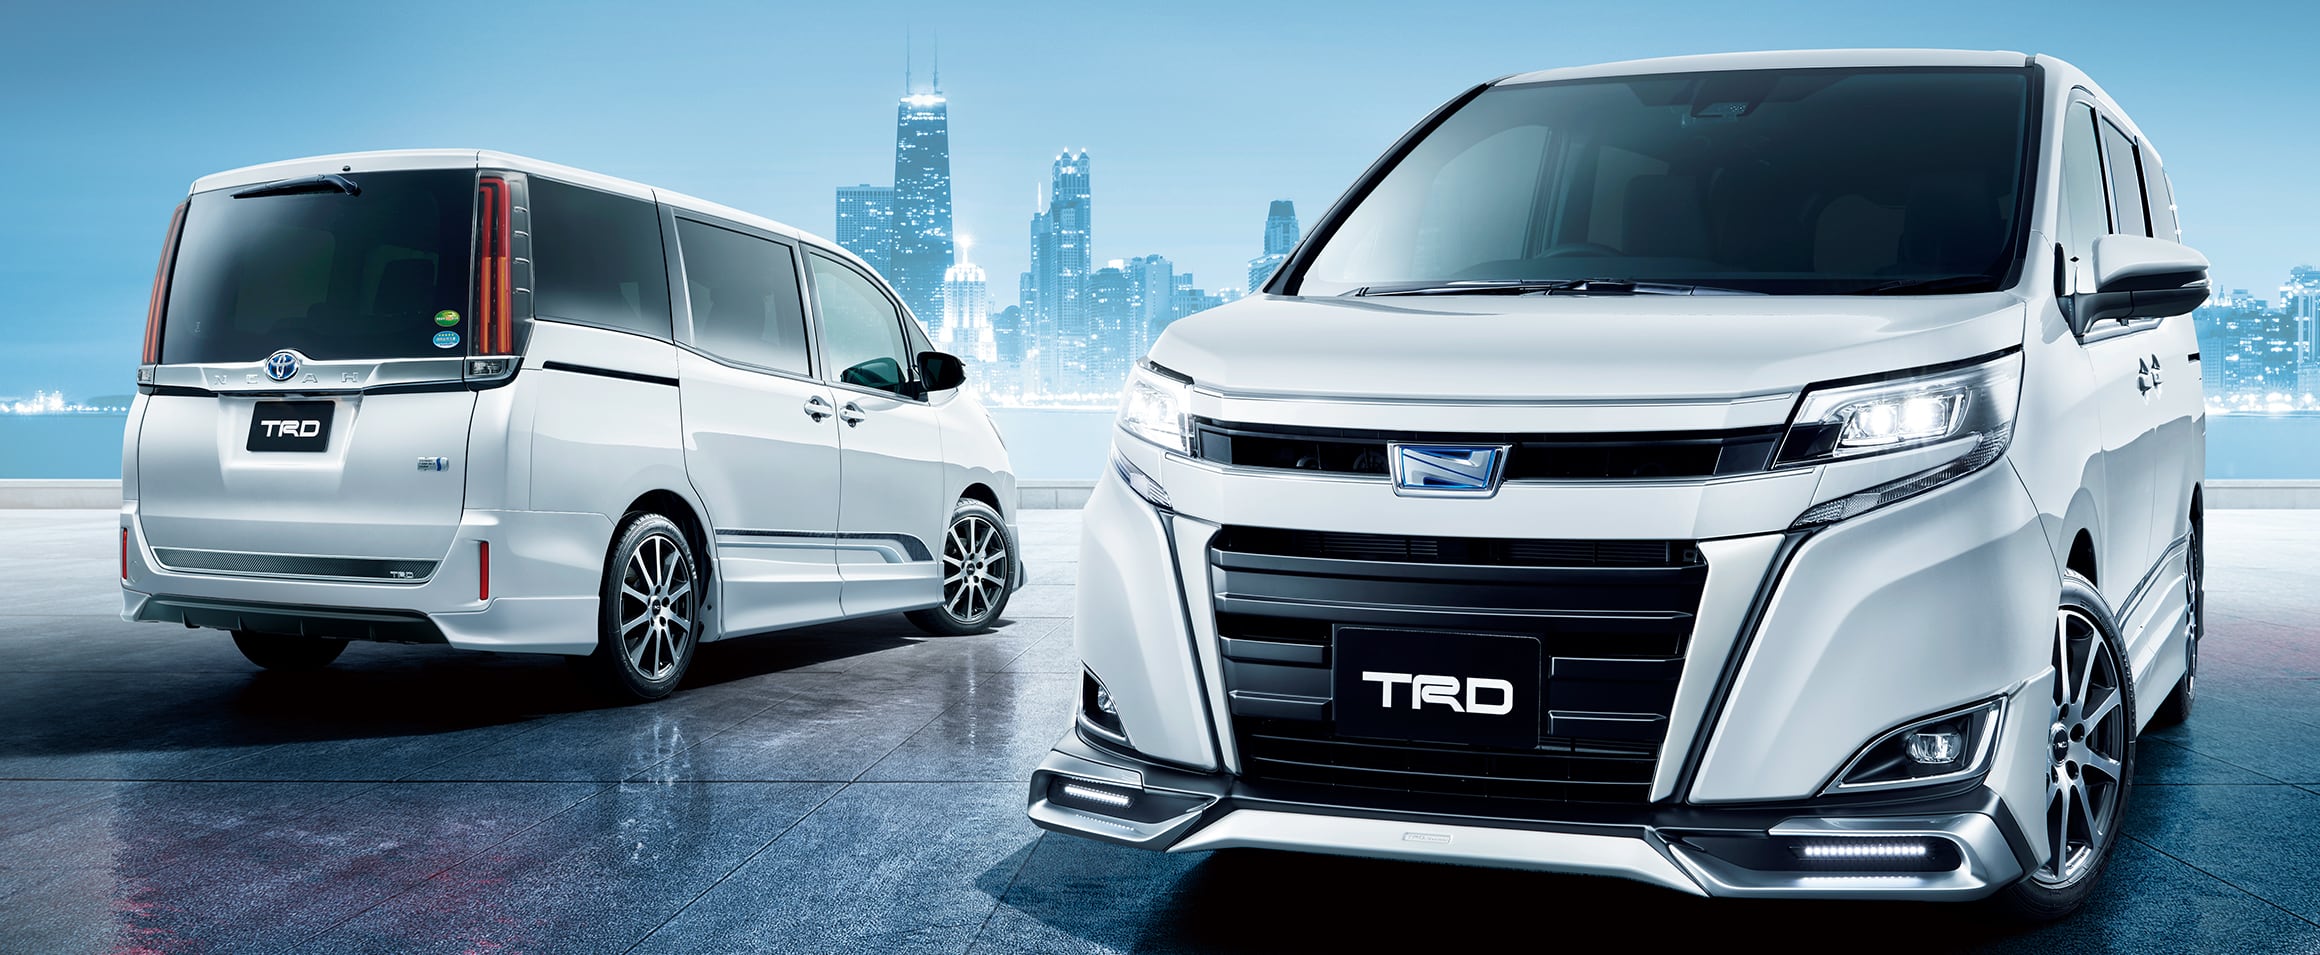 トヨタ ノア オプション装備 Trd For Hybrid G Hybrid X G X トヨタ自動車webサイト